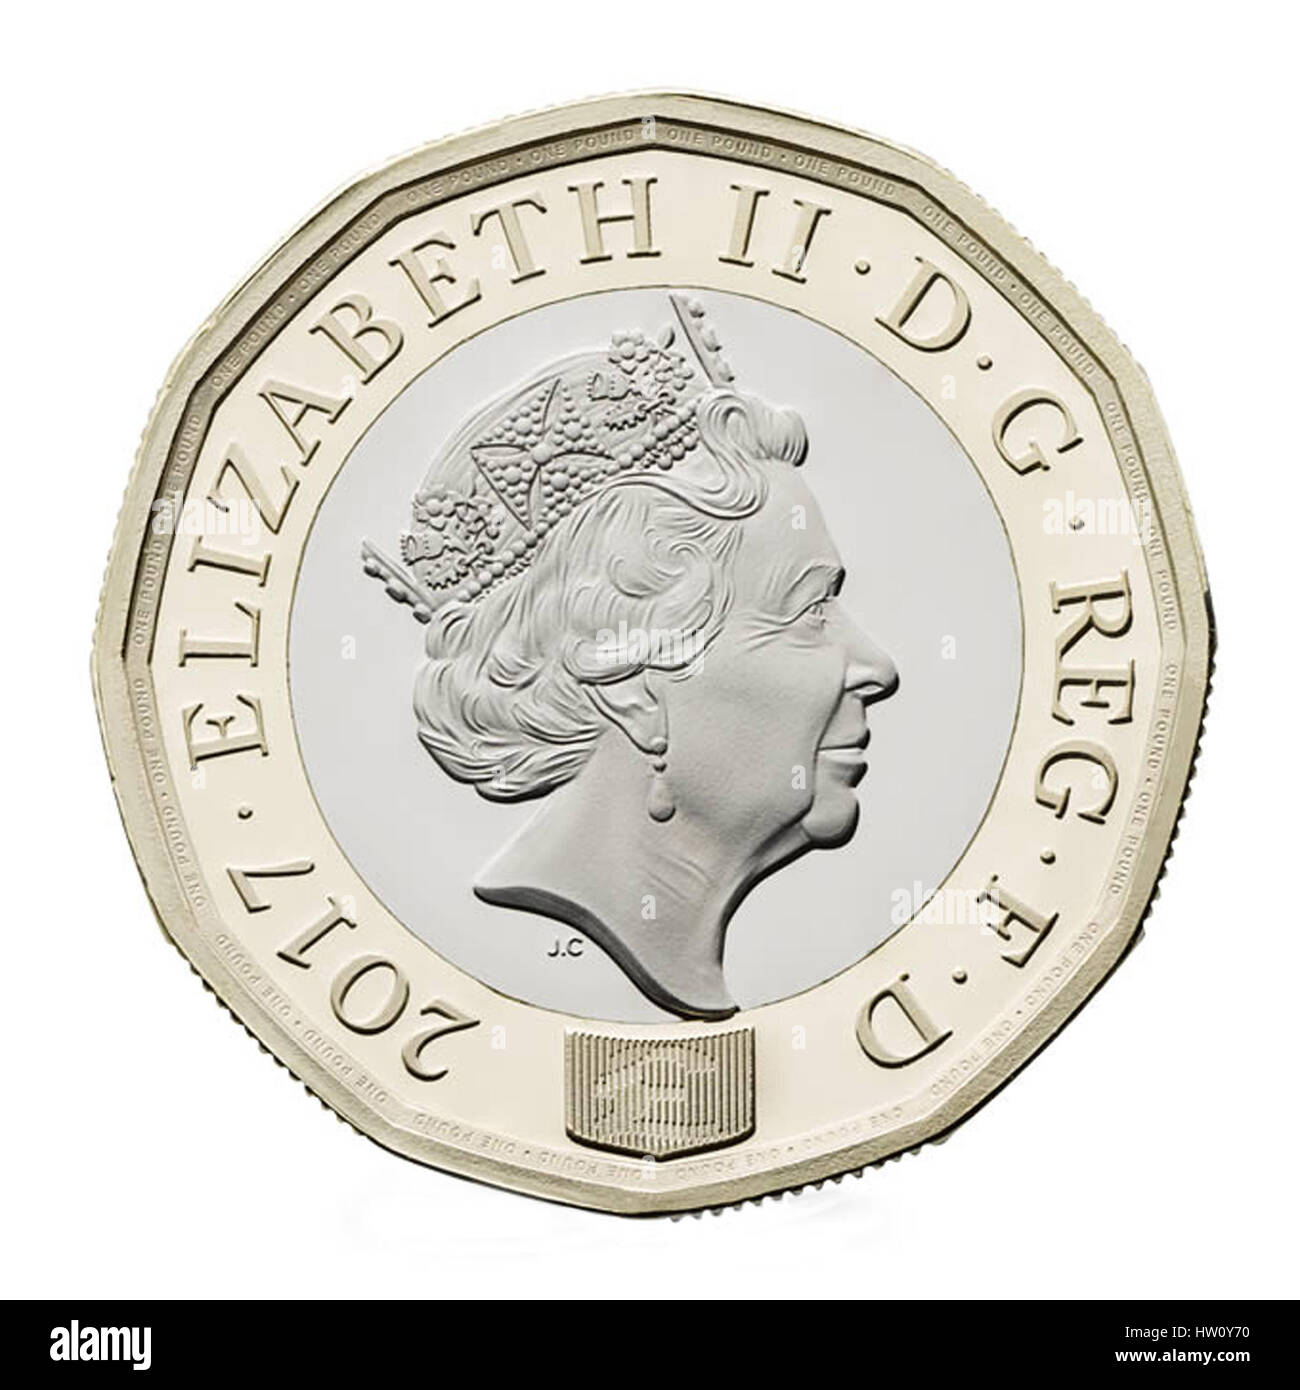 2017 englische Pfund-Münze isoliert auf weißem Hintergrund. Die neue UK £1 Münze treten Zirkulation im März 2017, und The Royal Mint produziert 1,5 Milliarden der neuen Münzen. Stockfoto